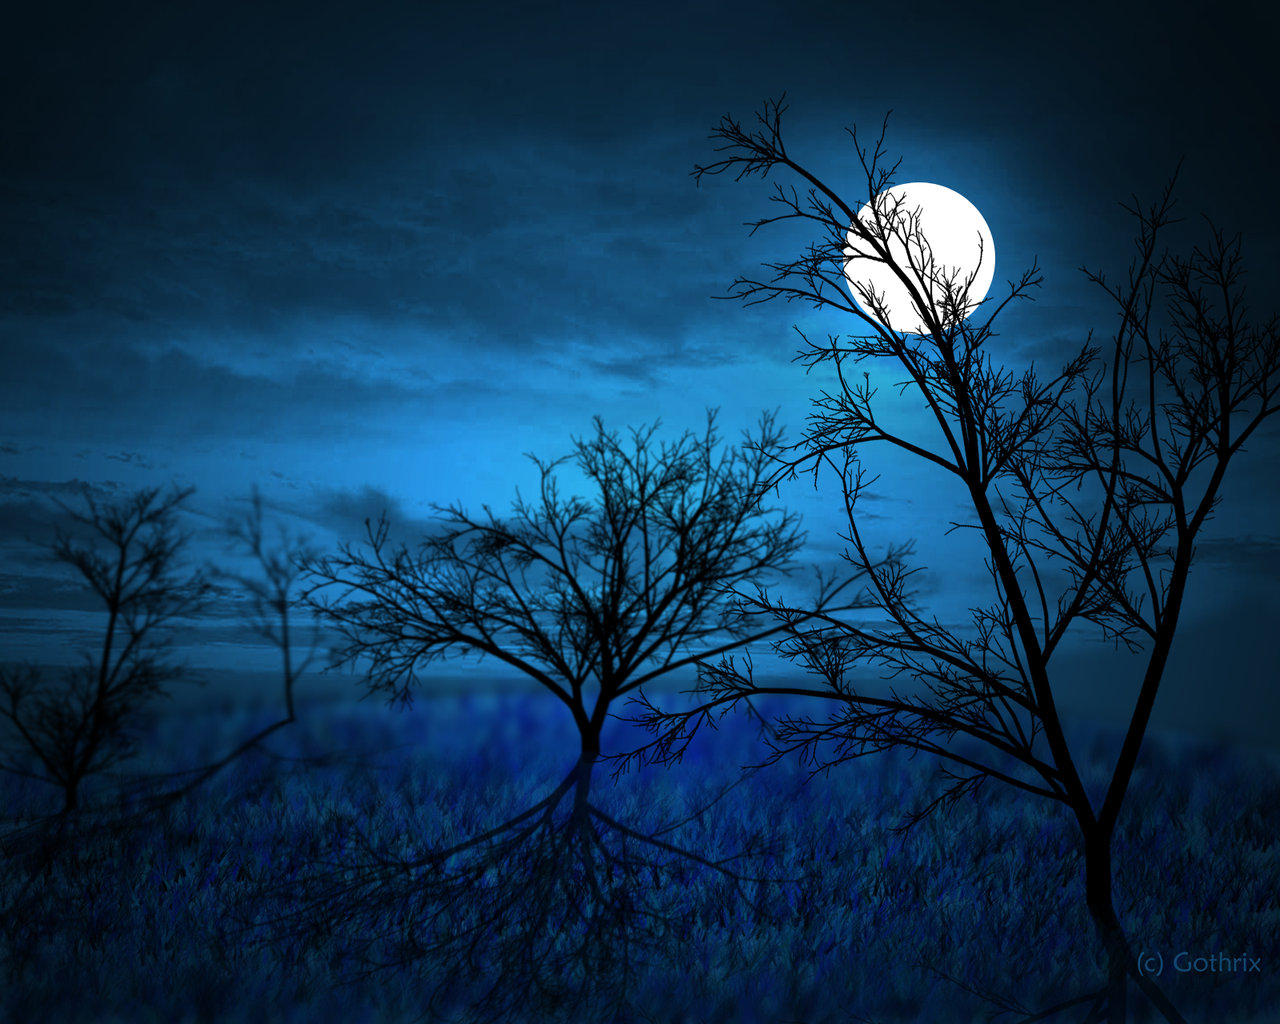 http://thecitysstillbreathing.files.wordpress.com/2012/09/full_moon_____midnight_forest_by_gothrix.jpg